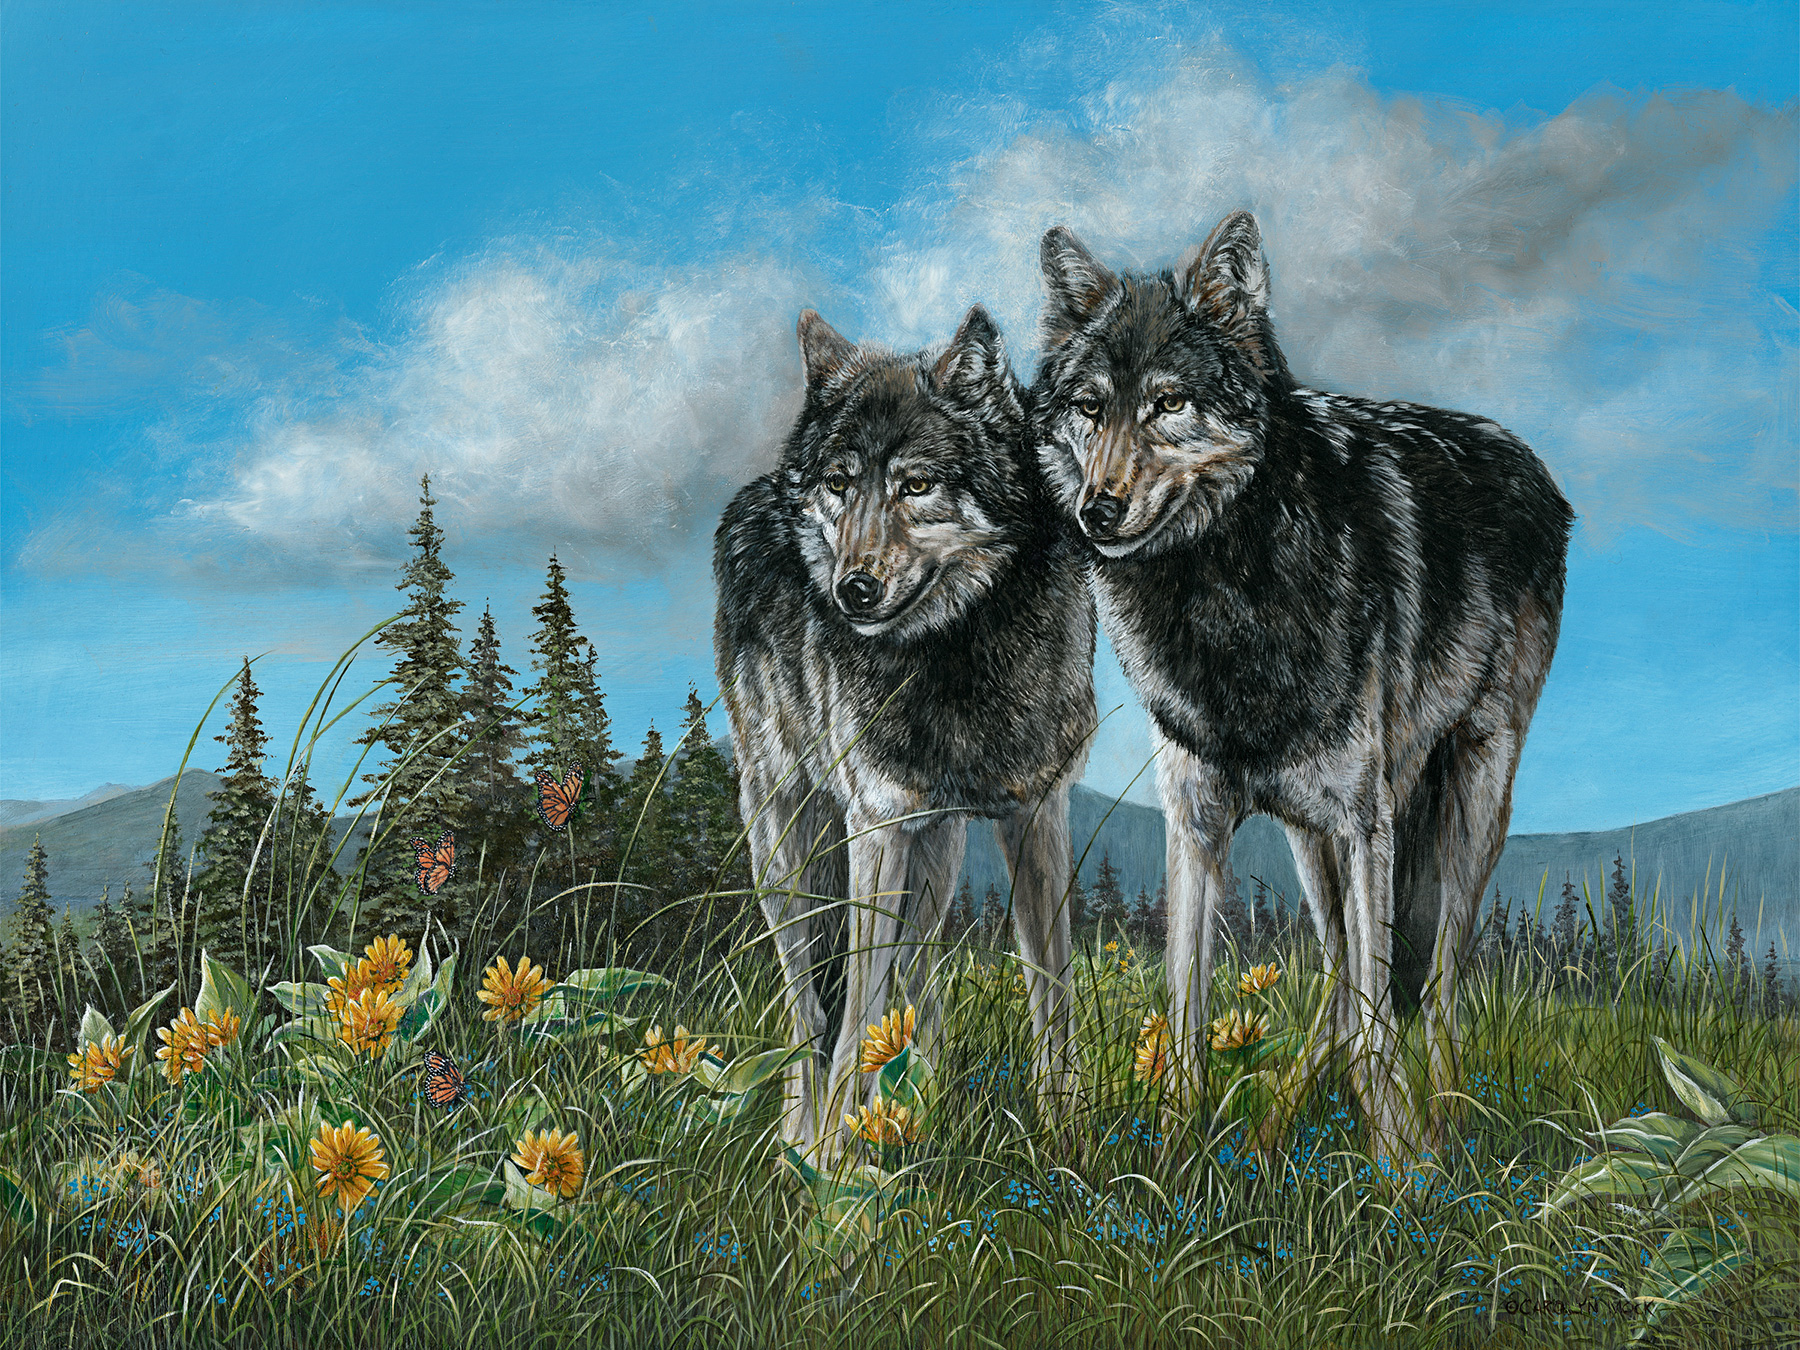 Two wolves enjoy the sun in an open field